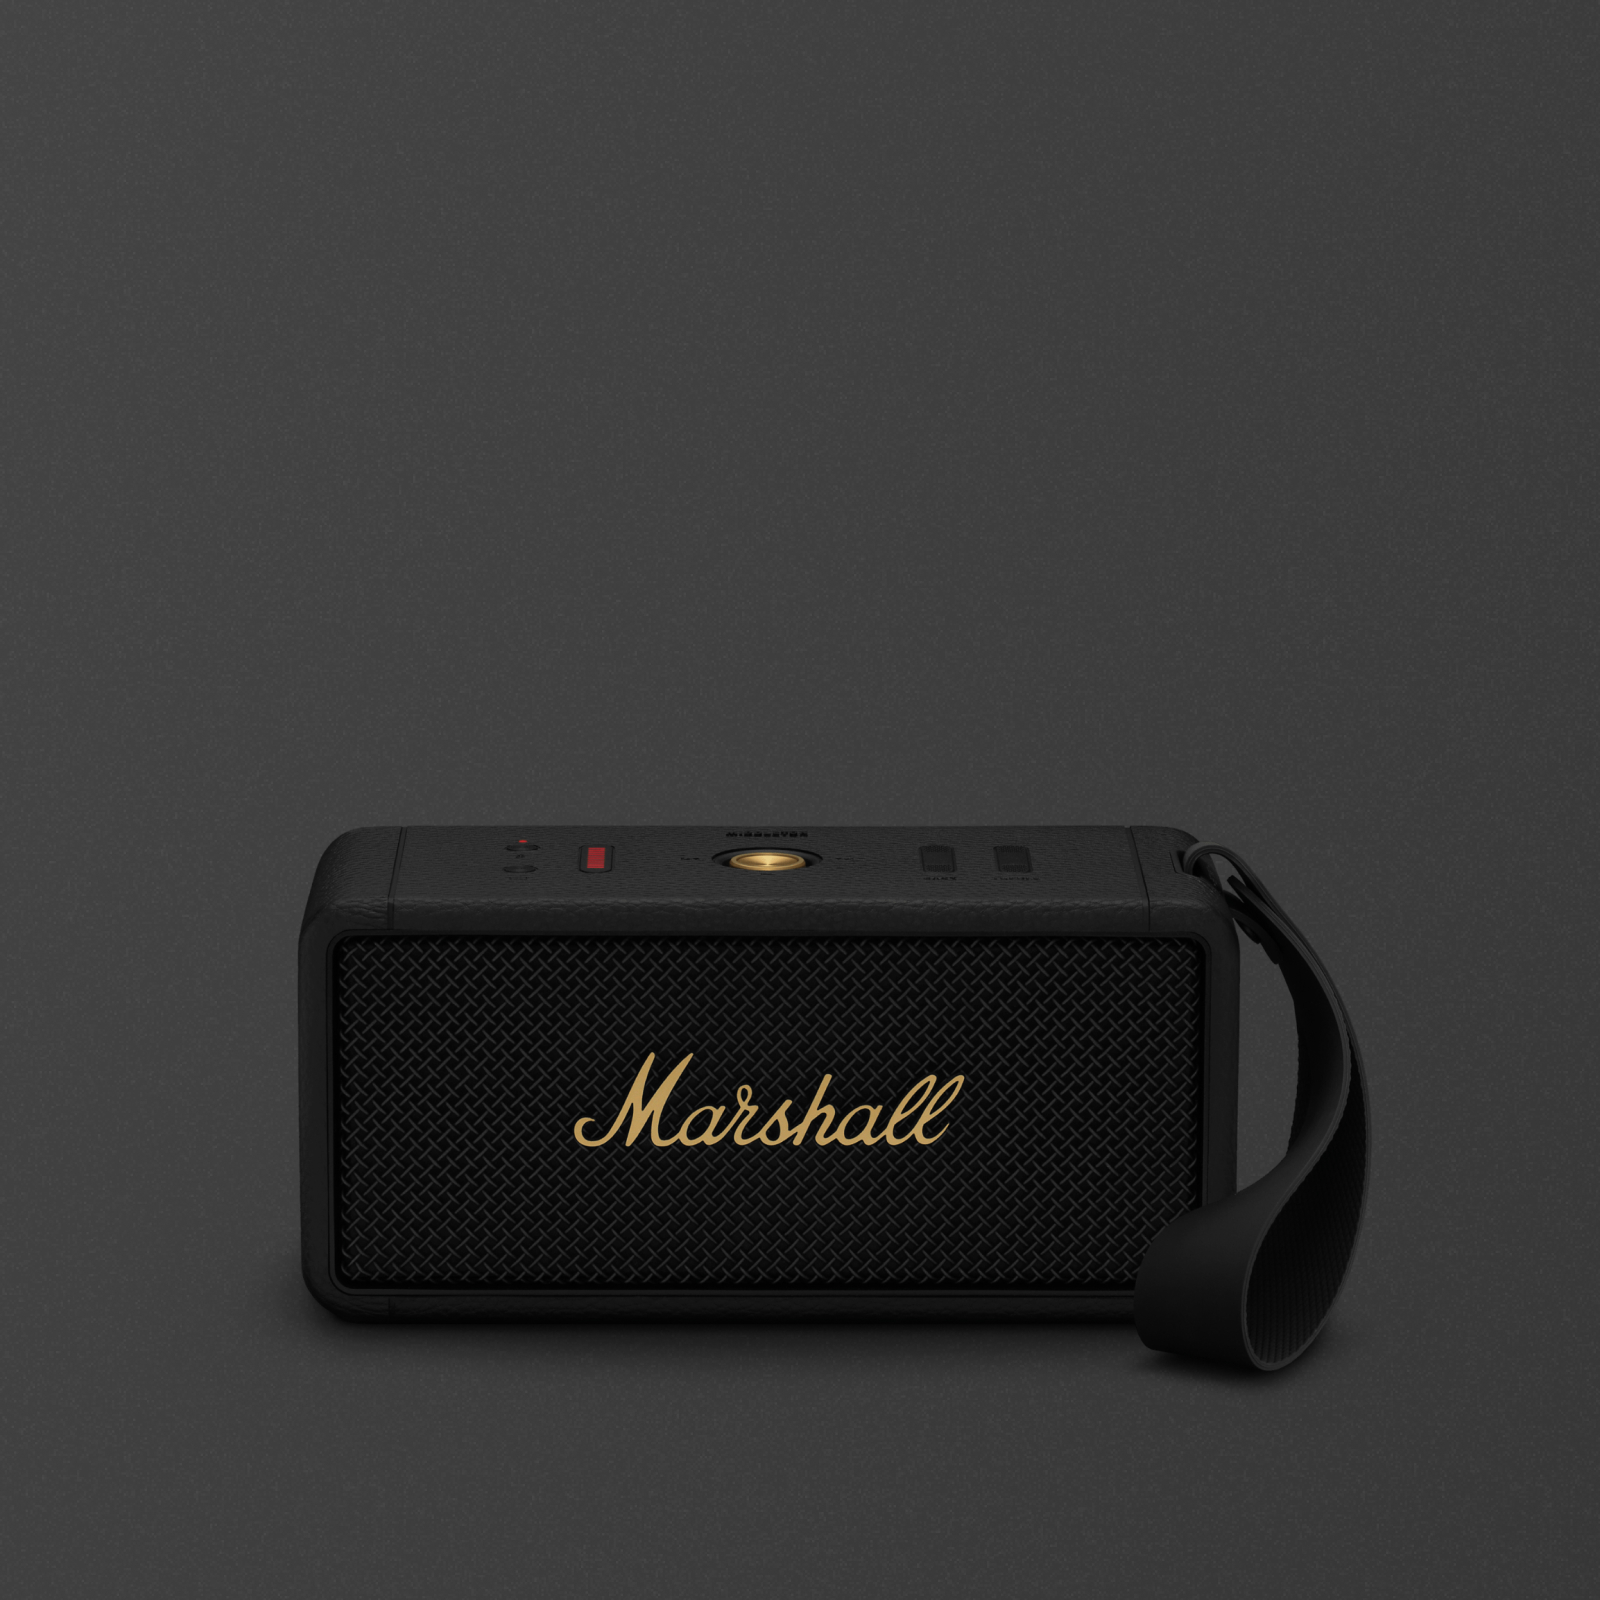 Tragbarer Middleton-Bluetooth-Lautsprecher auf dunklem Hintergrund.